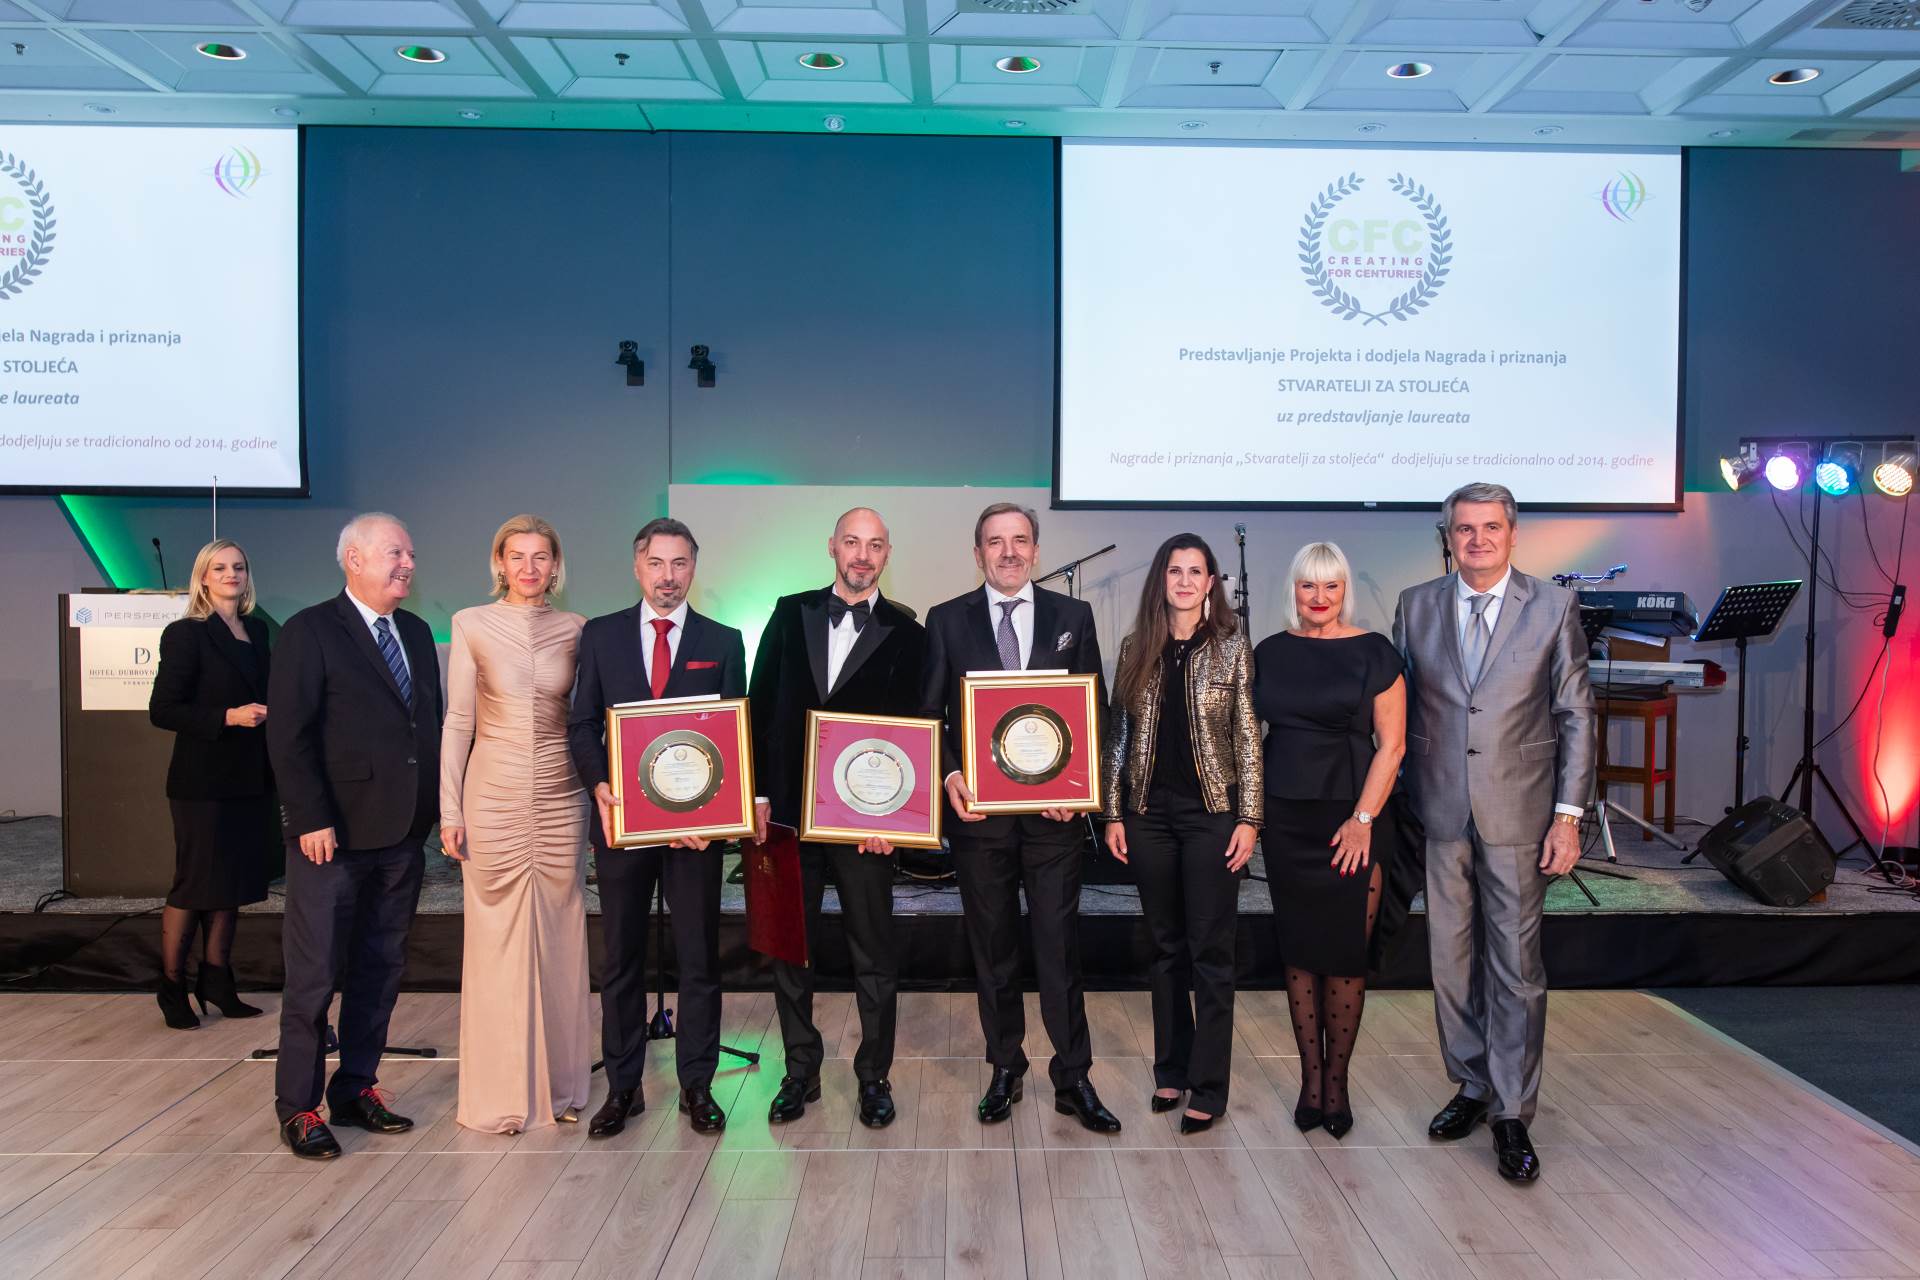  MTEL osvojio prestižnu nagradu ,,Stvaratelji za stoljeća" na Svjetskom kongresu preduzetnika 